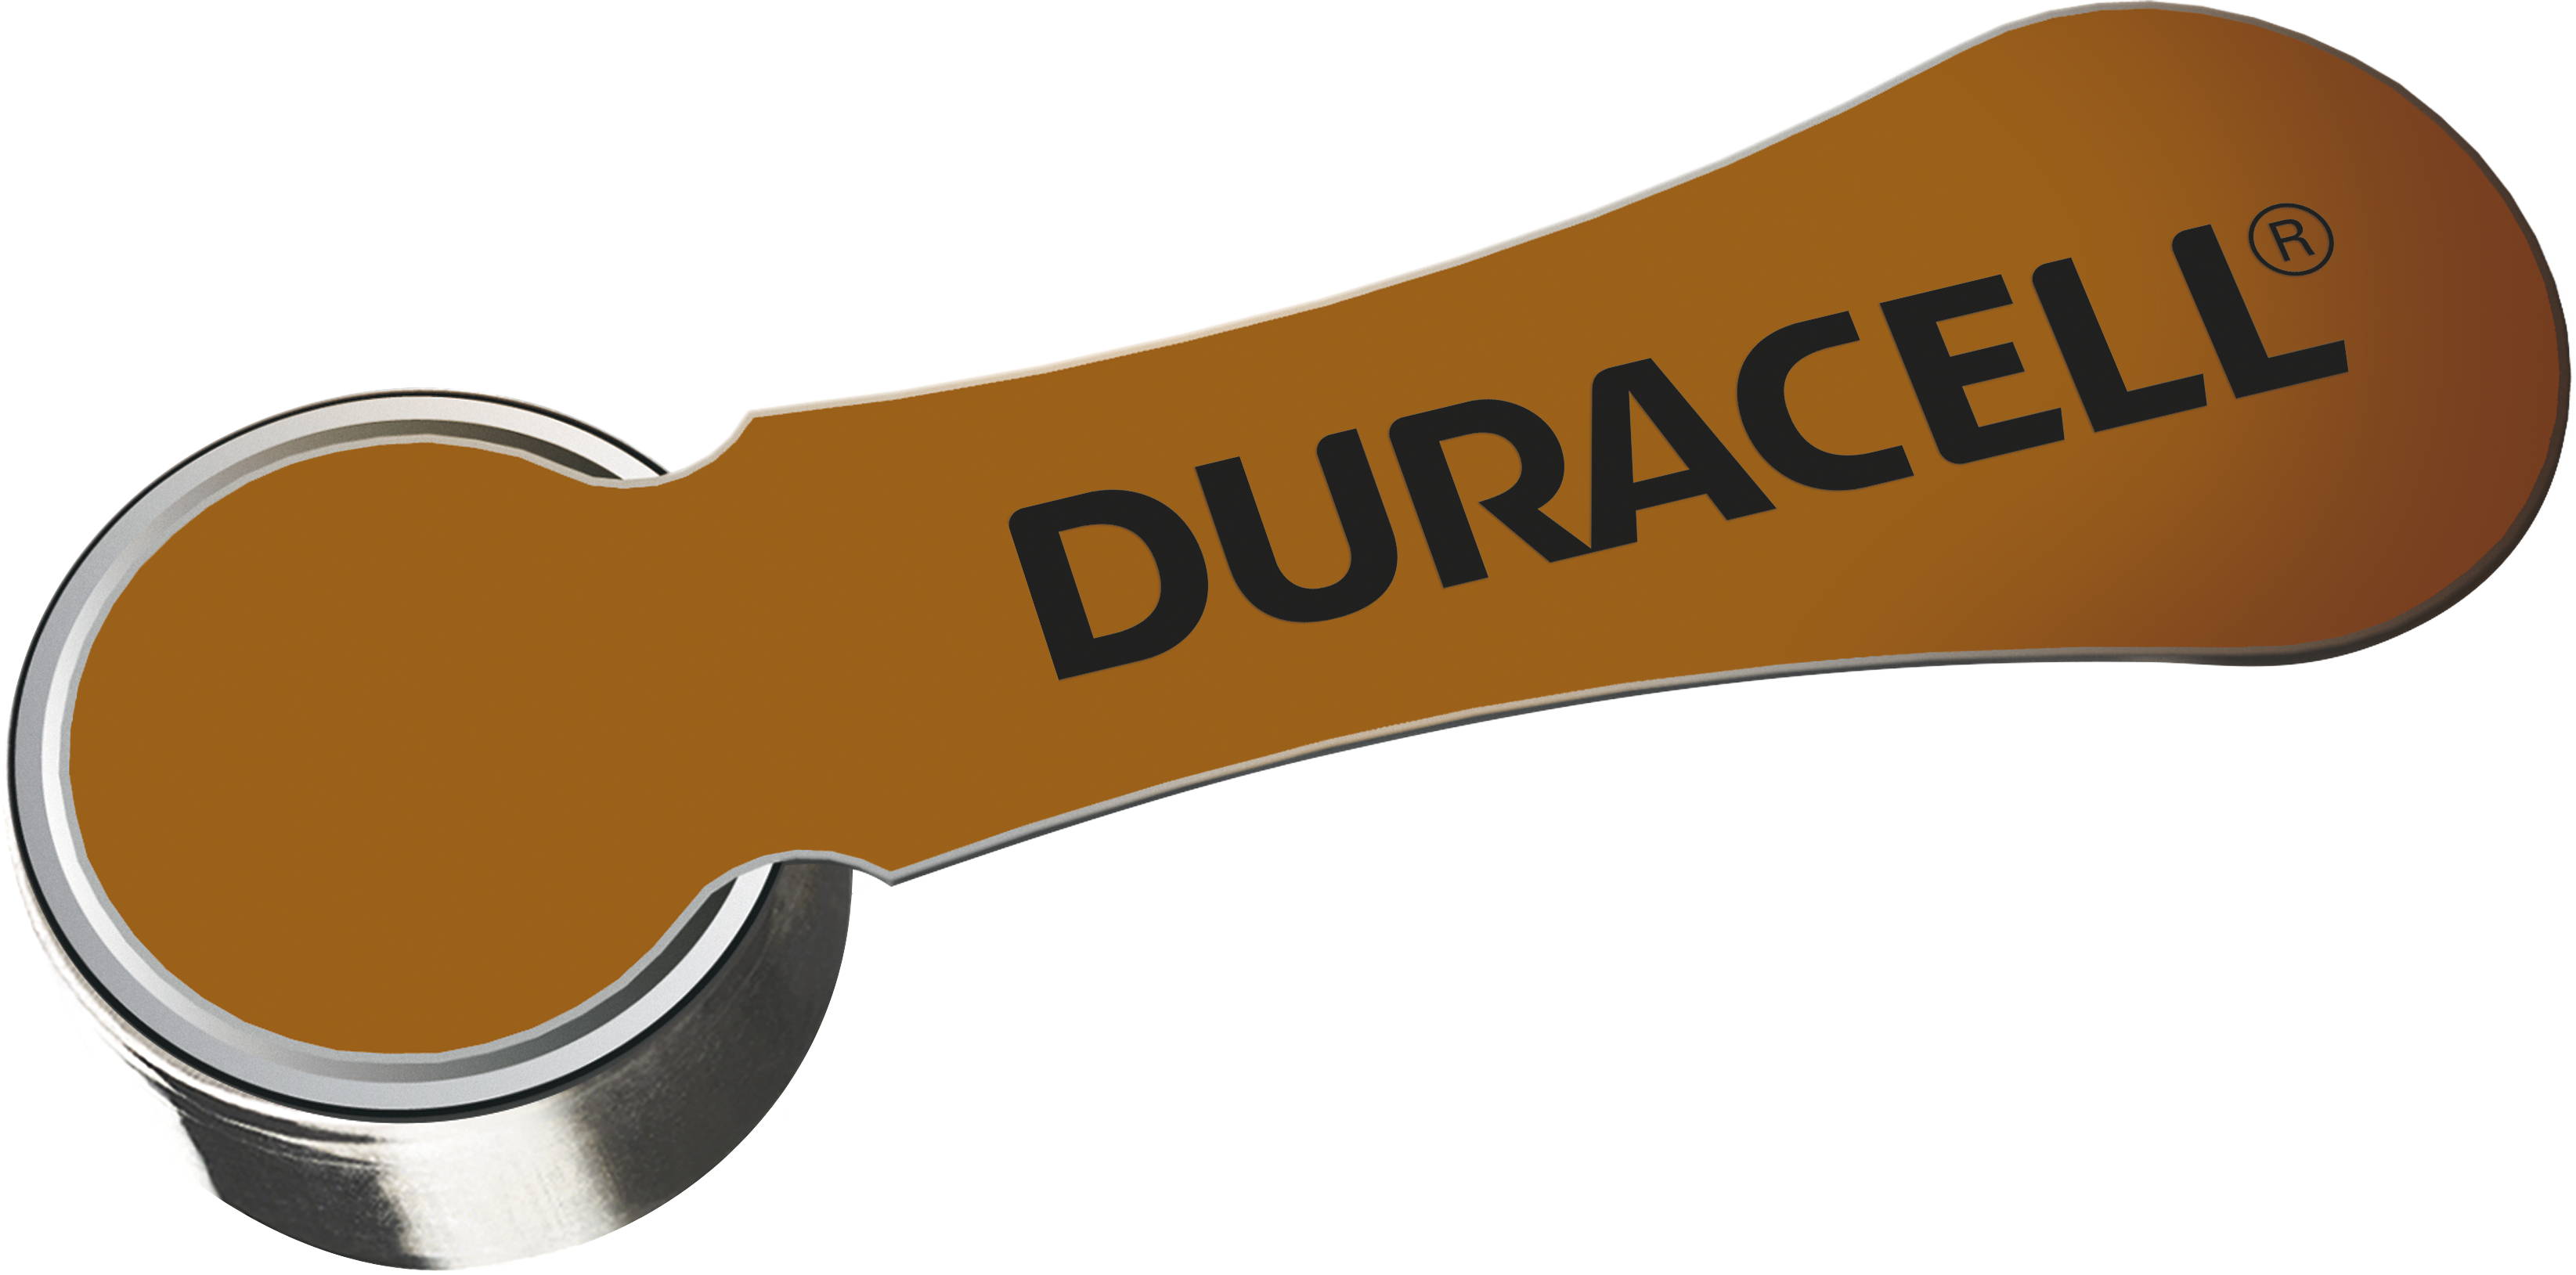 Productos de baterias Duracell  Baterías para audiofonos - 312